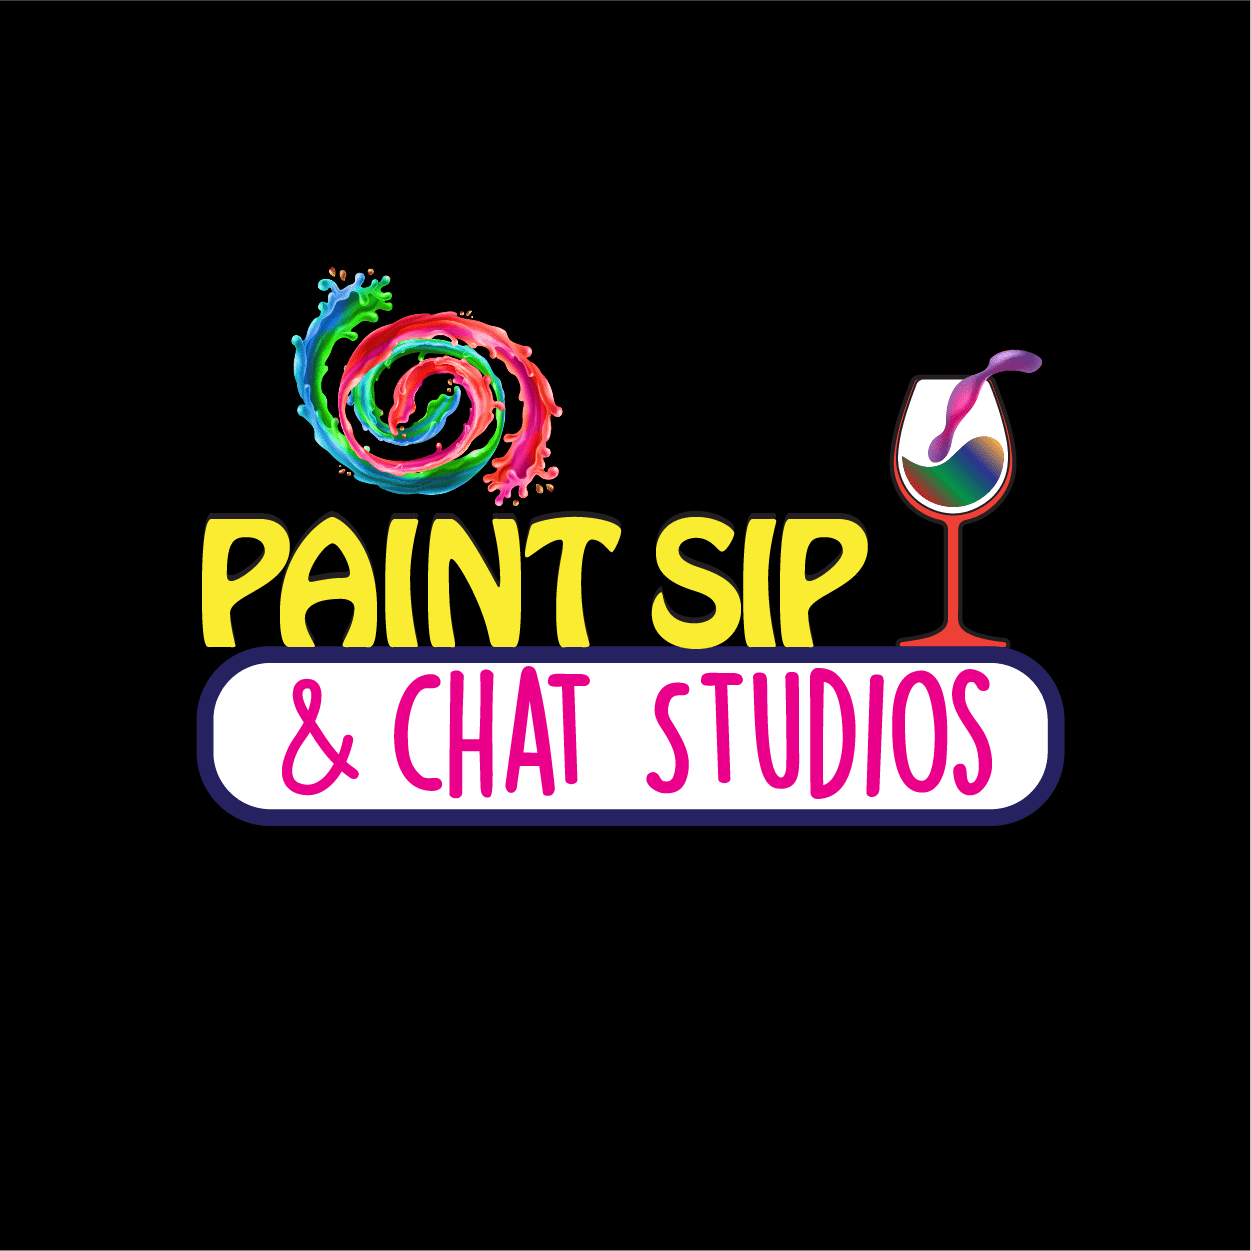 Paint Sip & Chat Studios